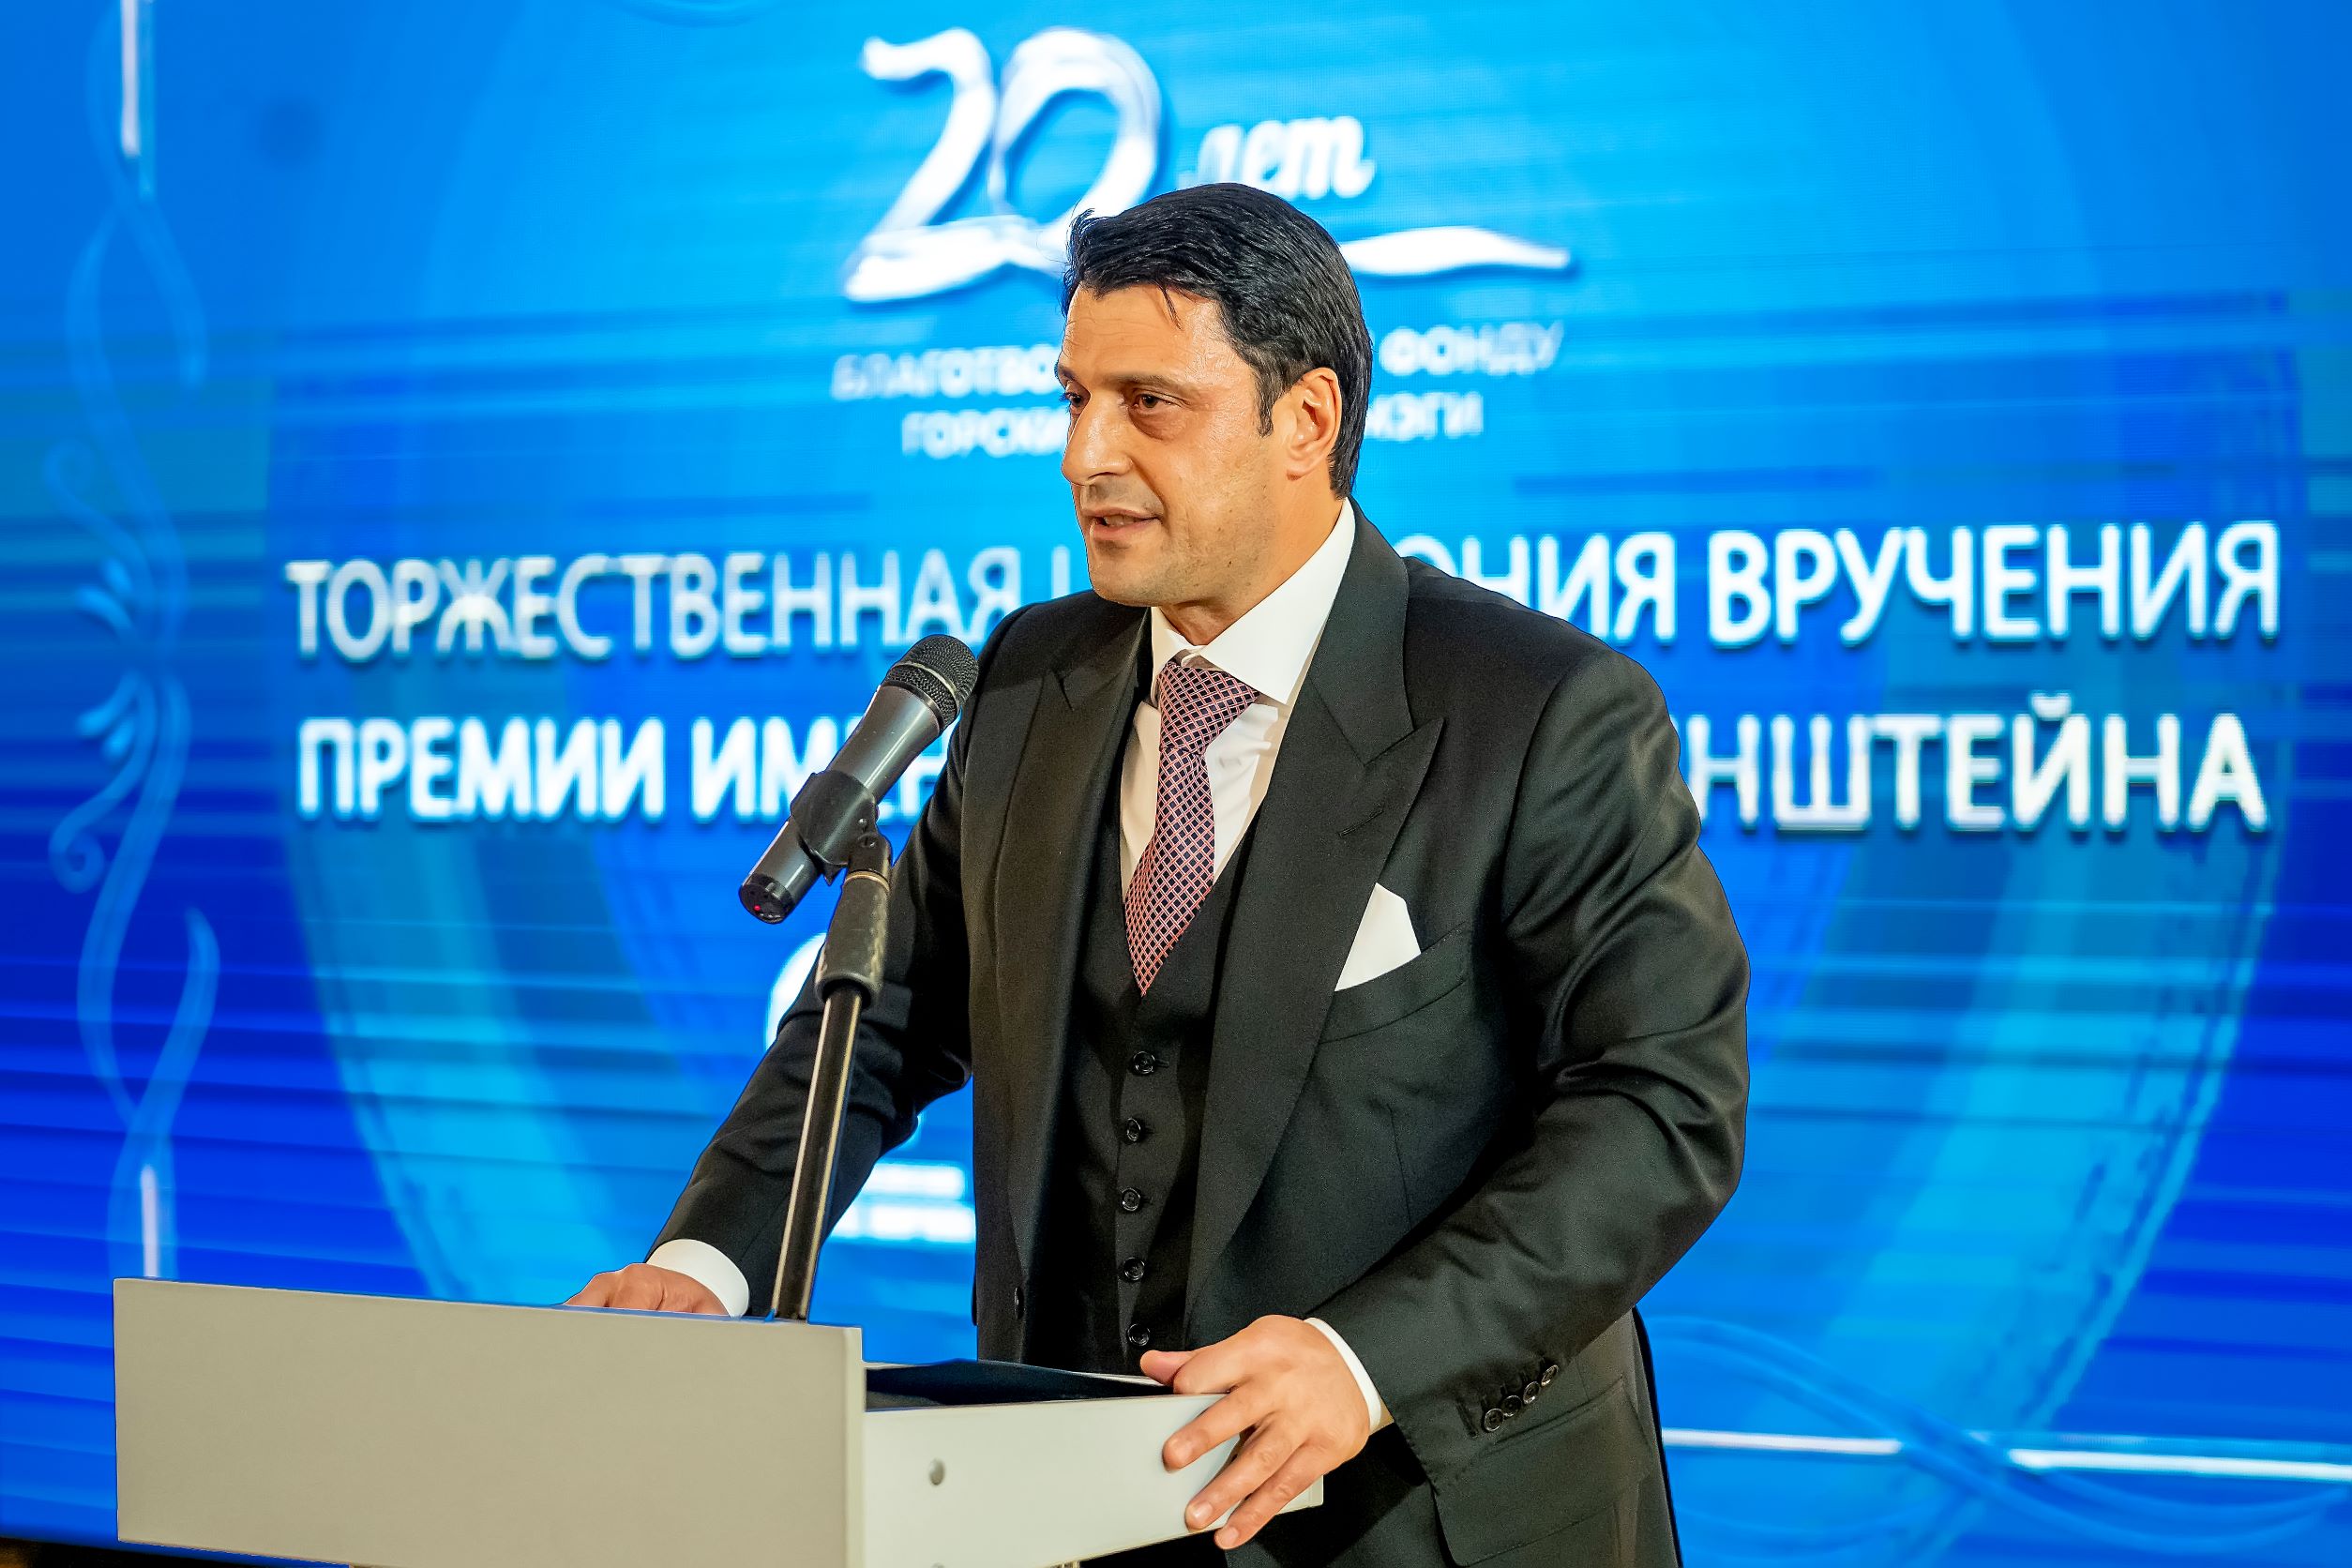 Награждение Премией СТМЭГИ - 2022 пройдет в Москве